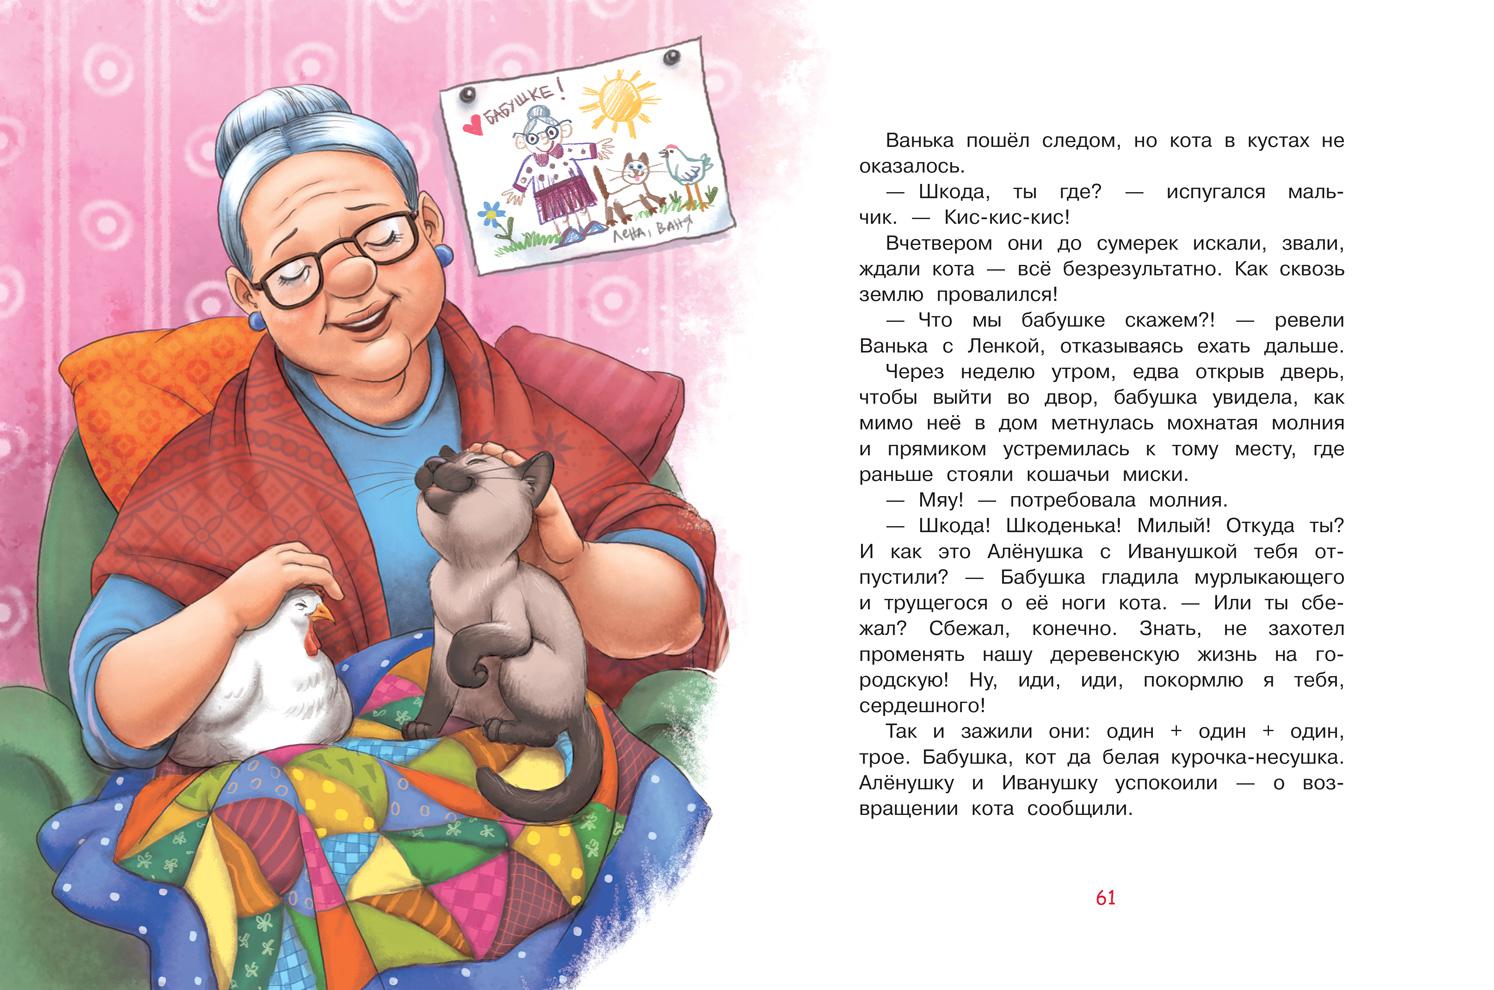 Произведения про бабушек. Рассказ про бабушку. Hfpprfp j ,f,EIRT. Истории бабушки. Небольшой рассказ о бабушке.